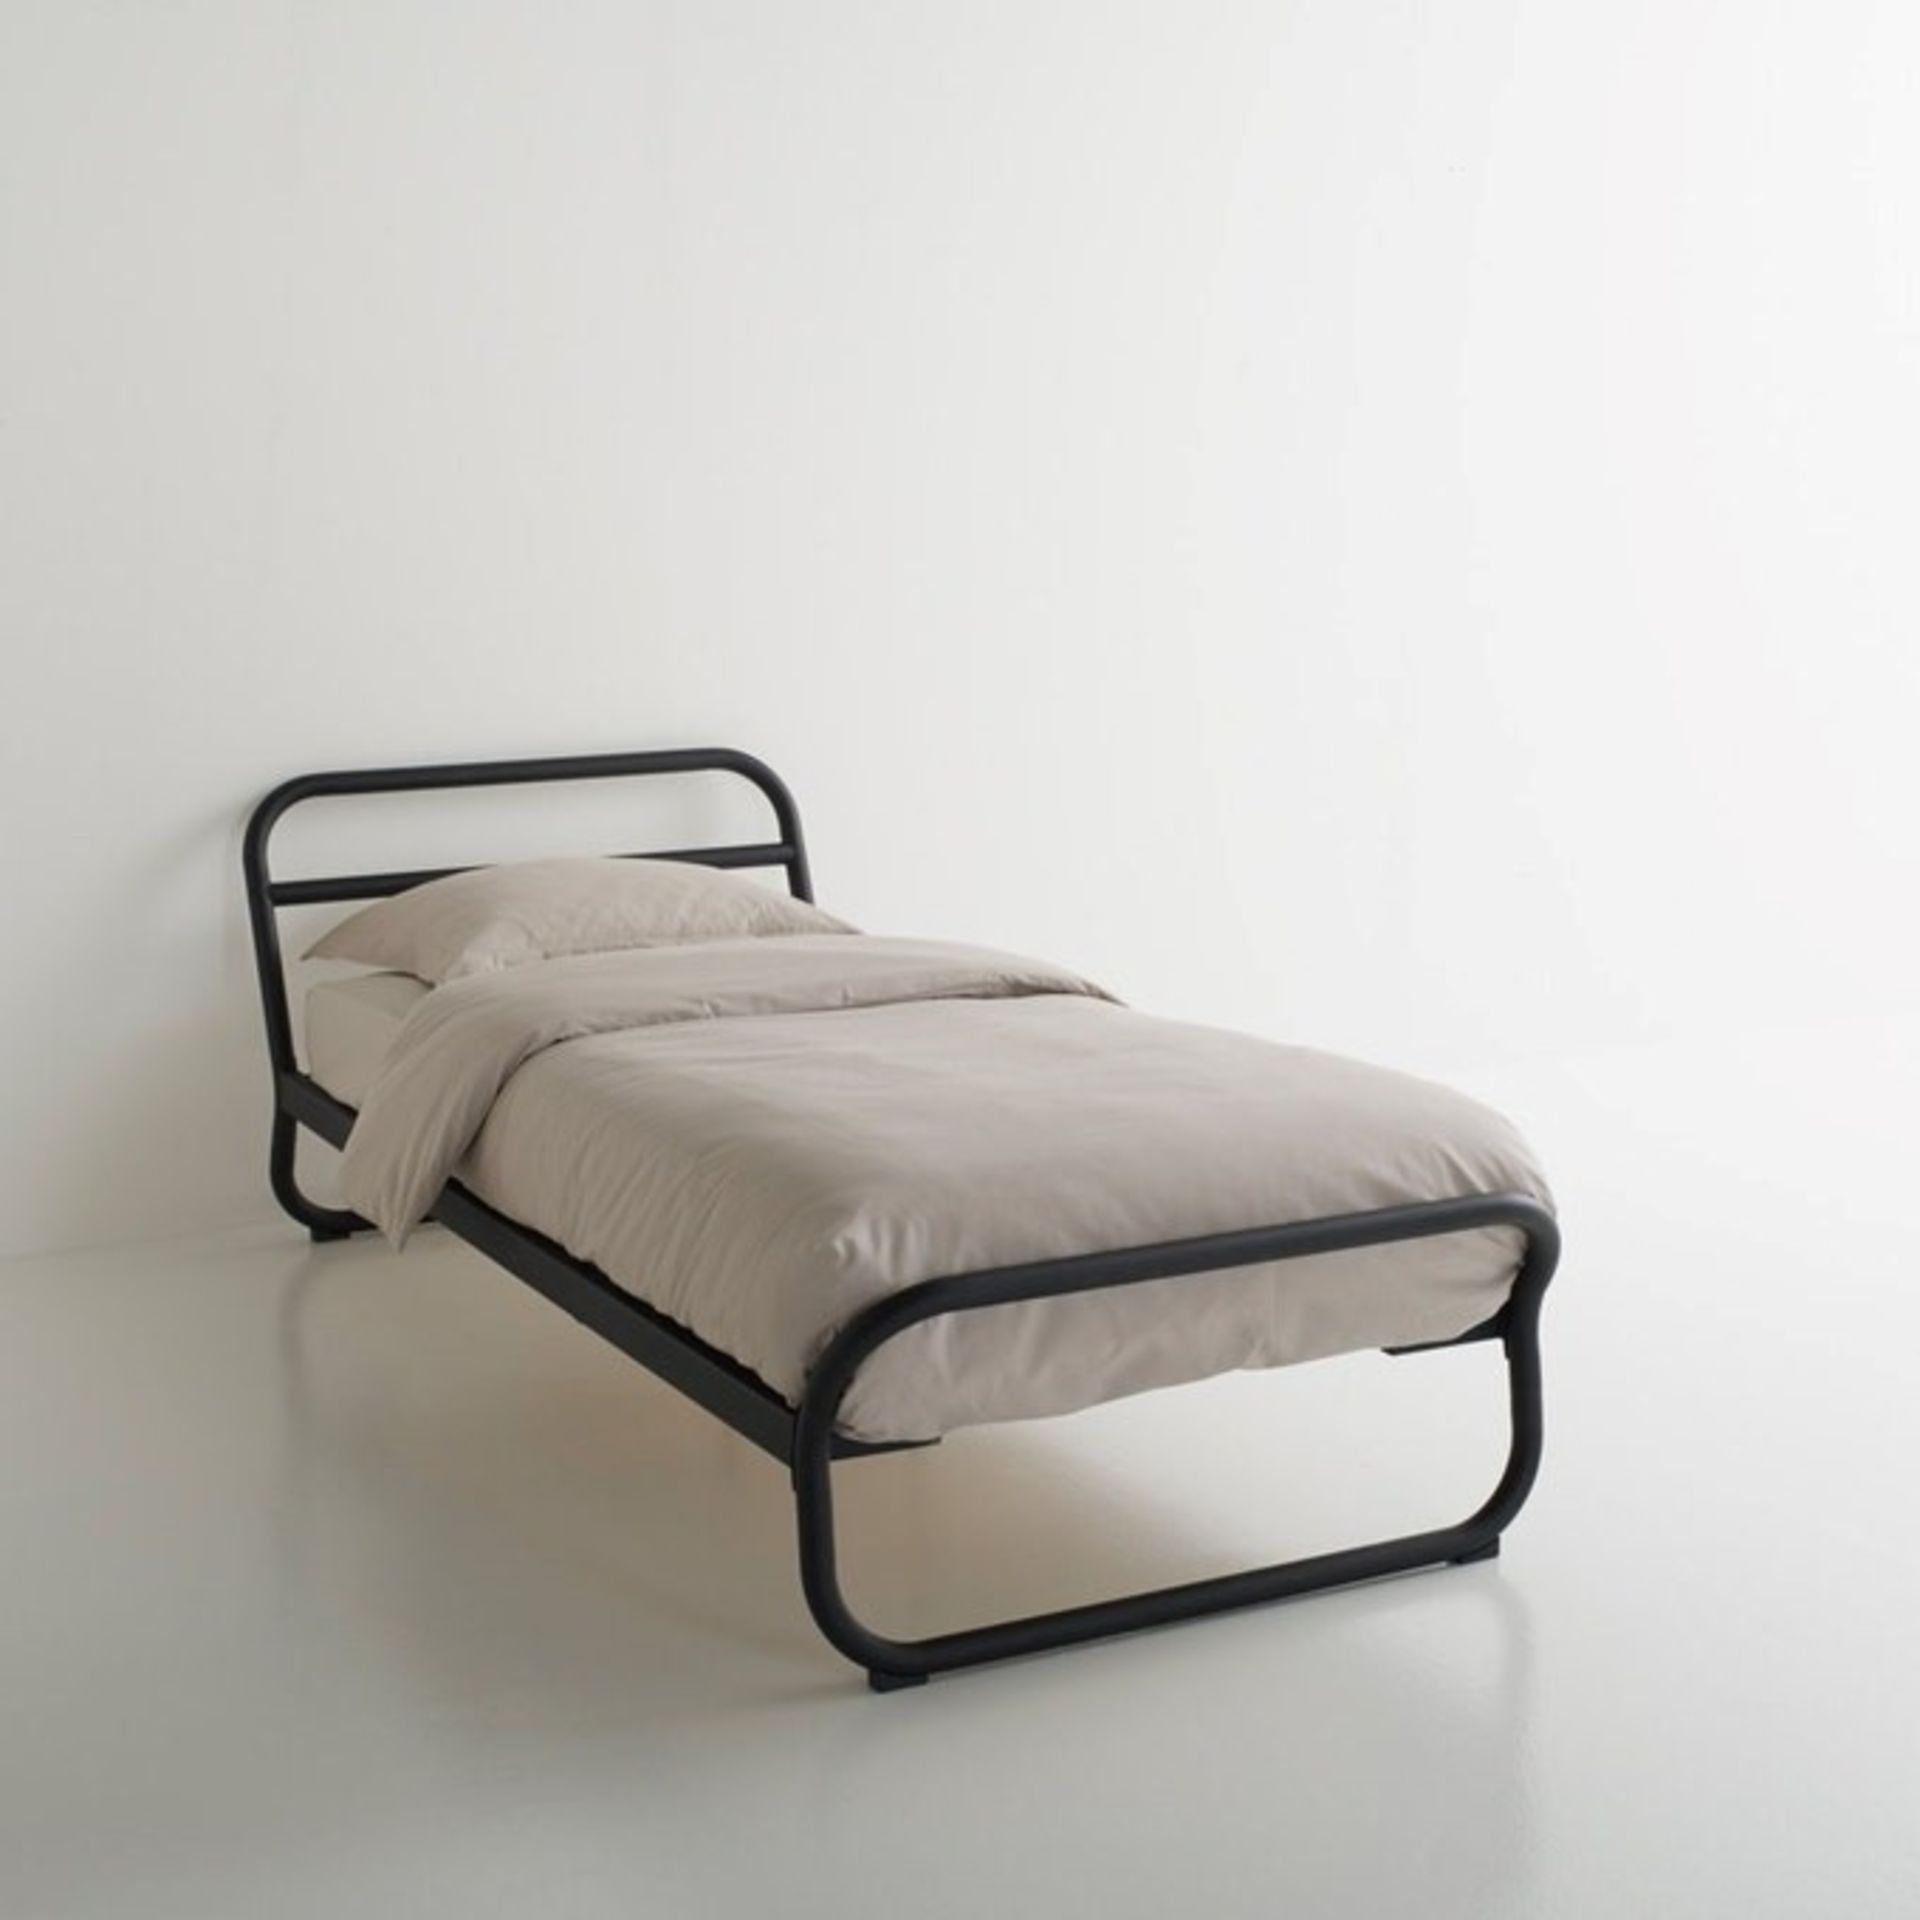 1 GRADE A BOXED DESIGNER JANIK TUBULAR FRAME BED WITHOUT SLATS IN MATTE BLACK / SIZE: SINGLE /